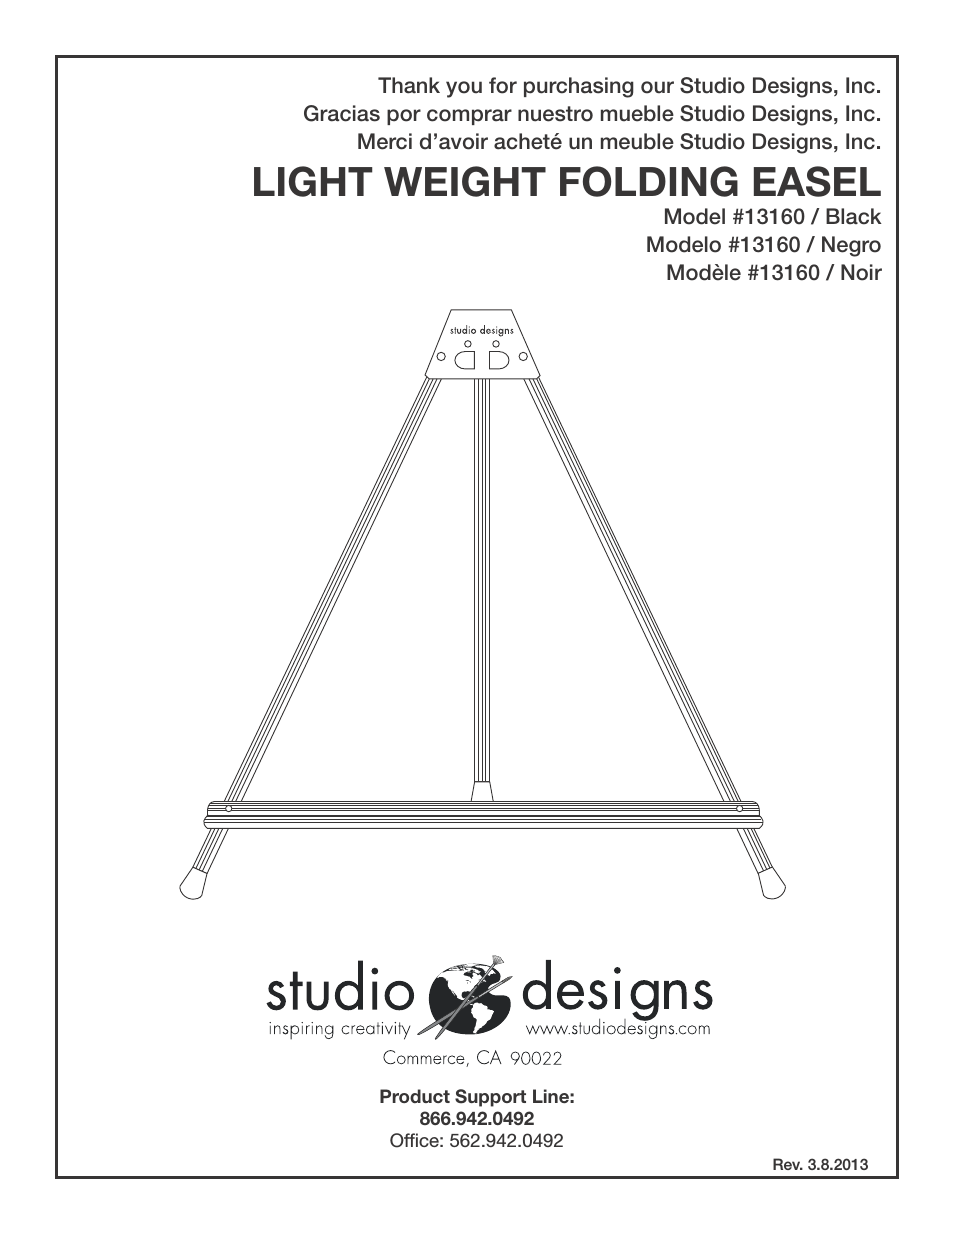 Light Weight Folding Easel